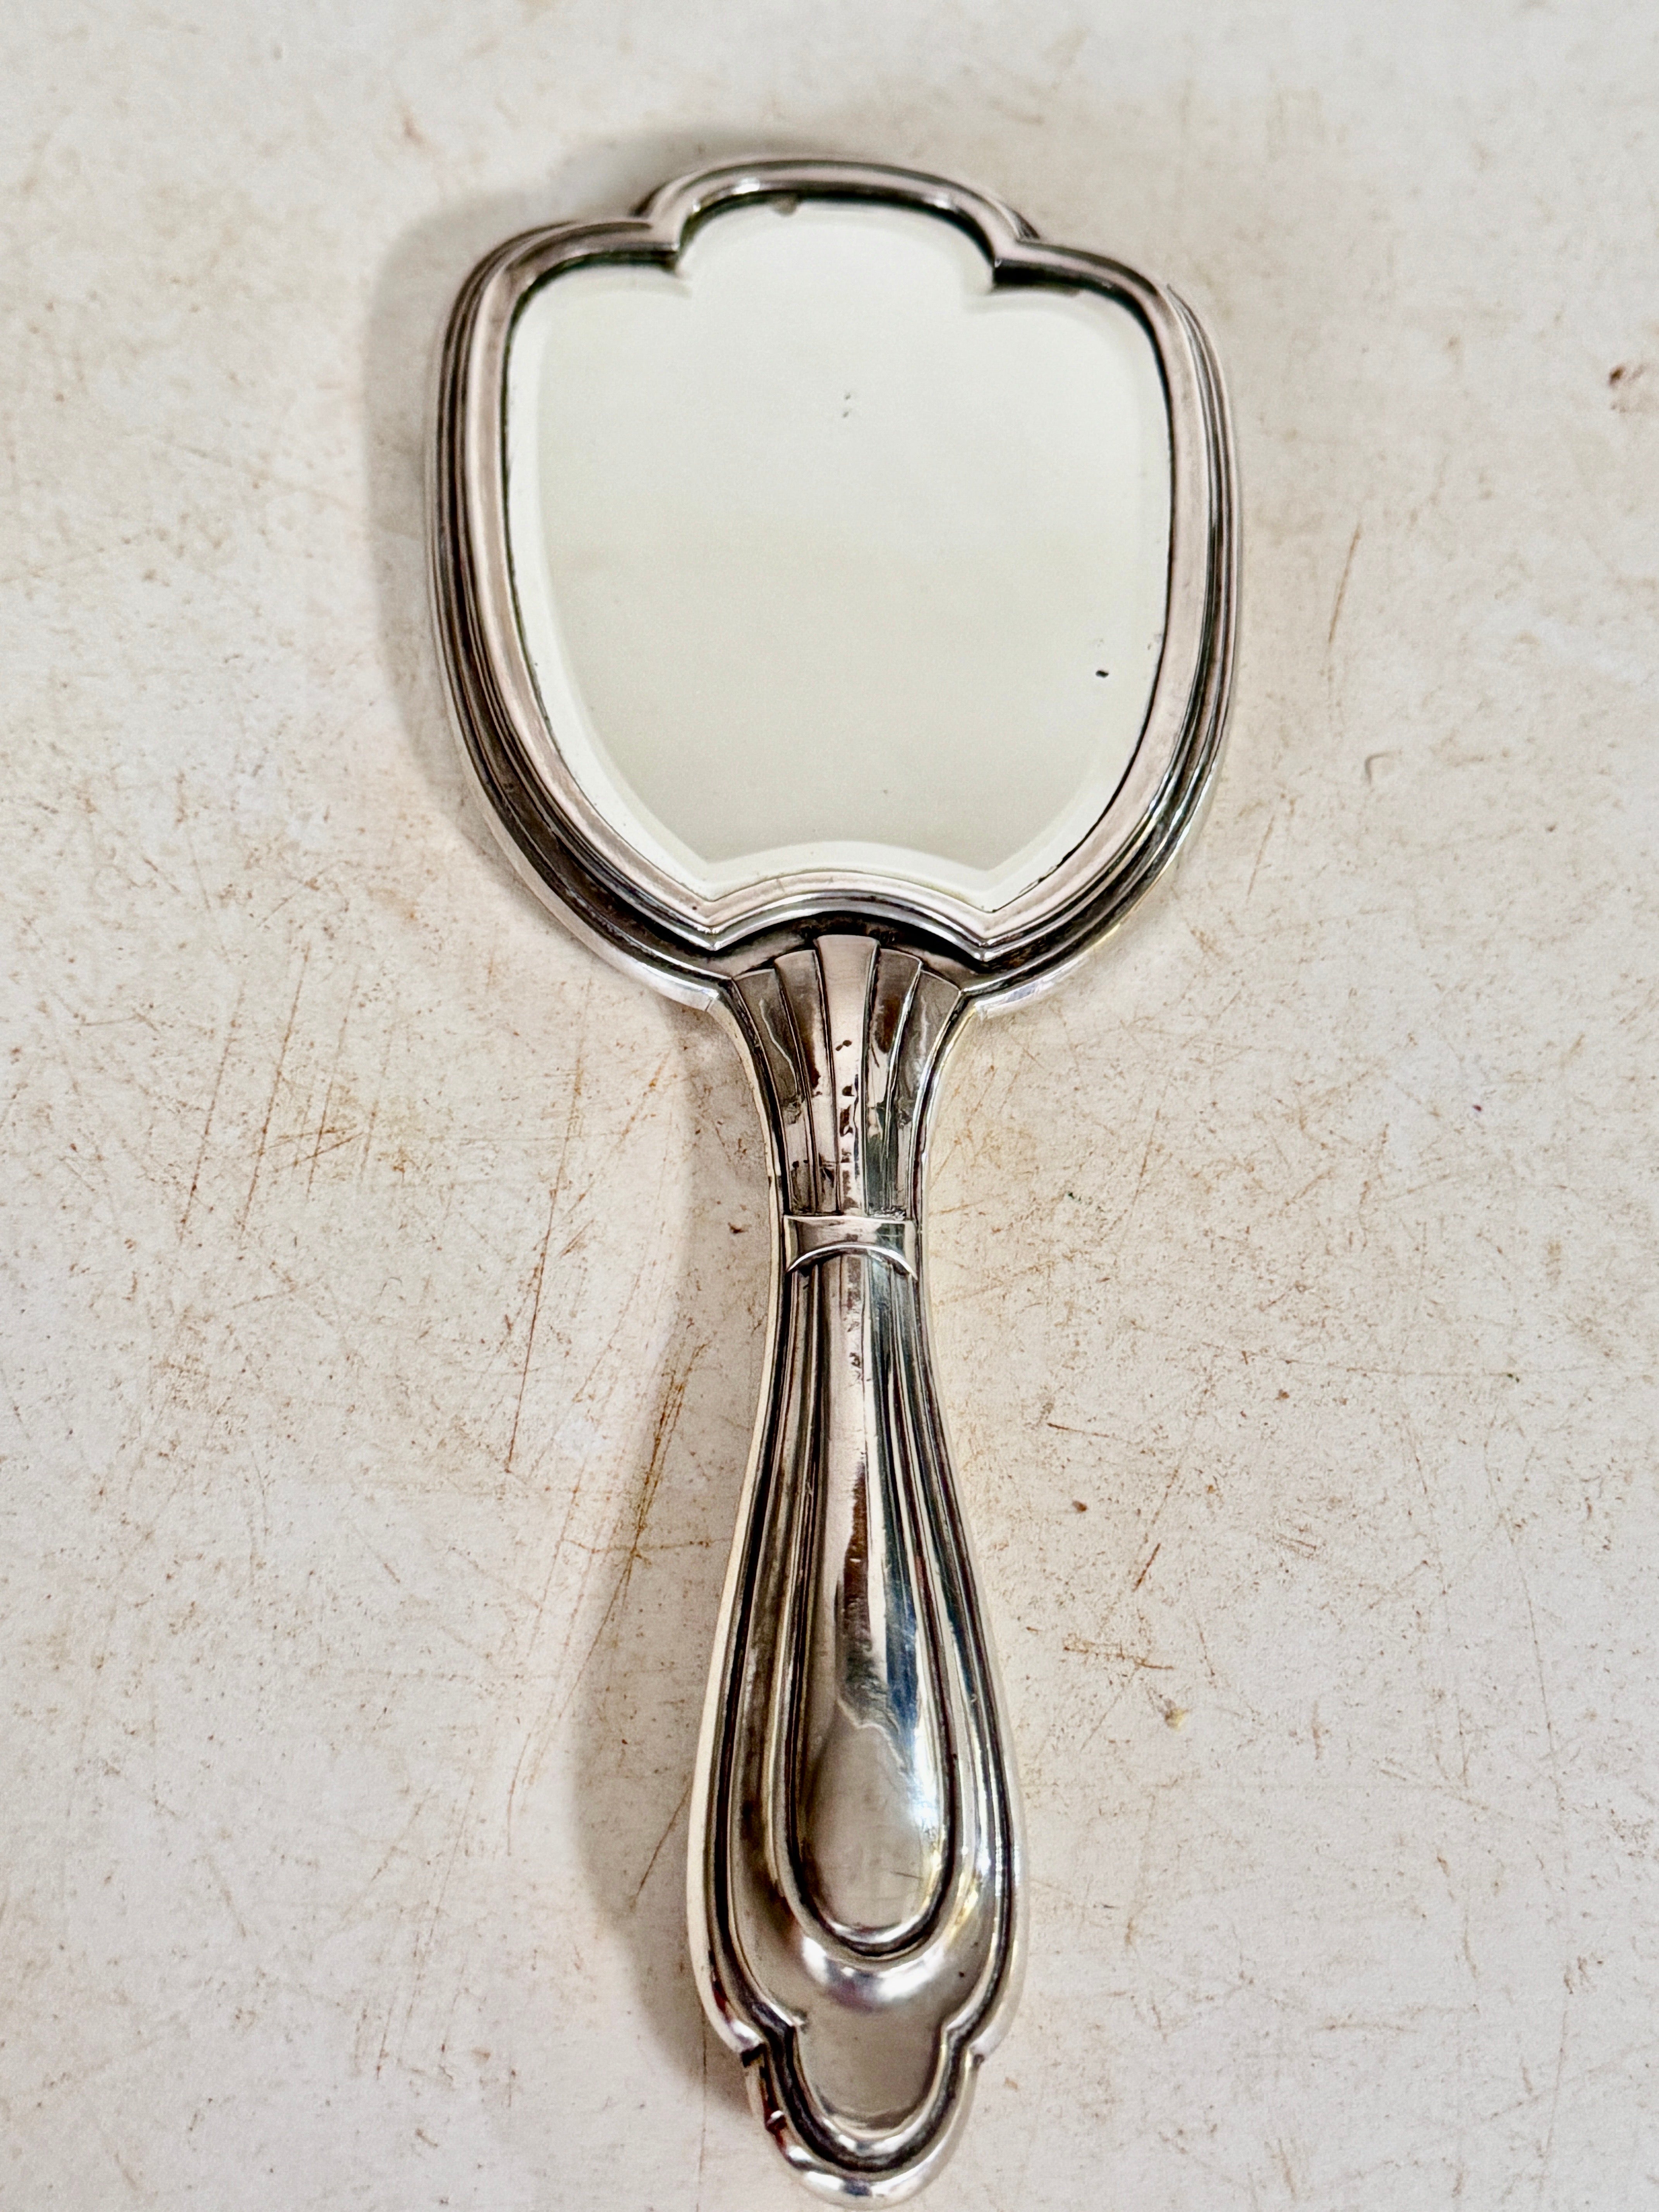 Dieser Spiegel ist ein Handspiegel. In Steerling Silber, mit der Punze von Silber und 800g angegeben. Es wurde um 1940 in Frankreich hergestellt.
Farbe Silber.